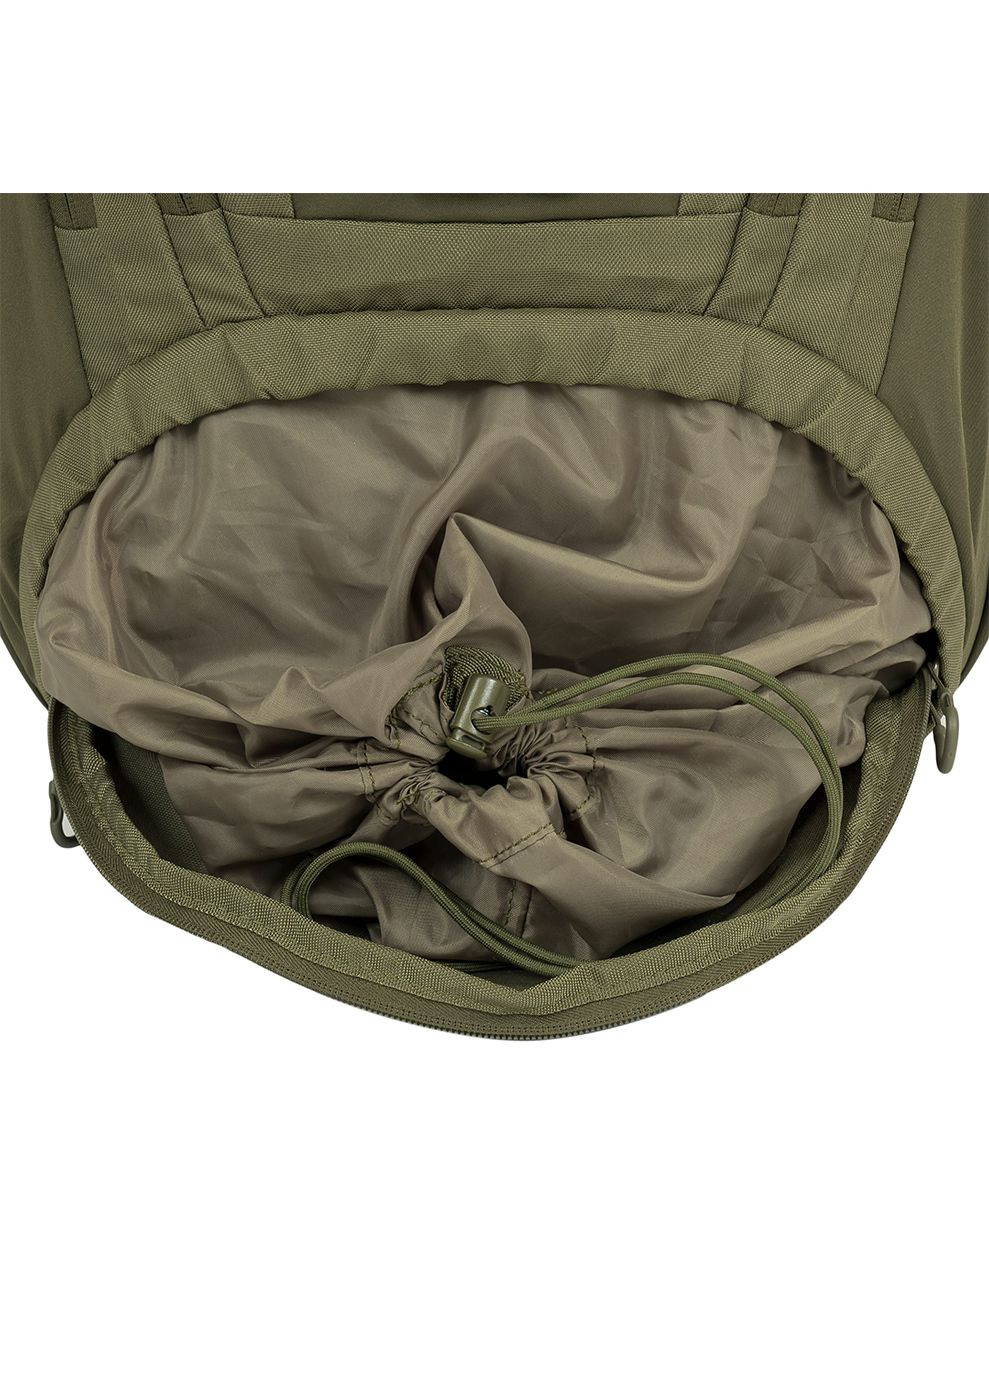 Рюкзак тактический Eagle 3 Backpack 40L Olive Highlander (268831753)